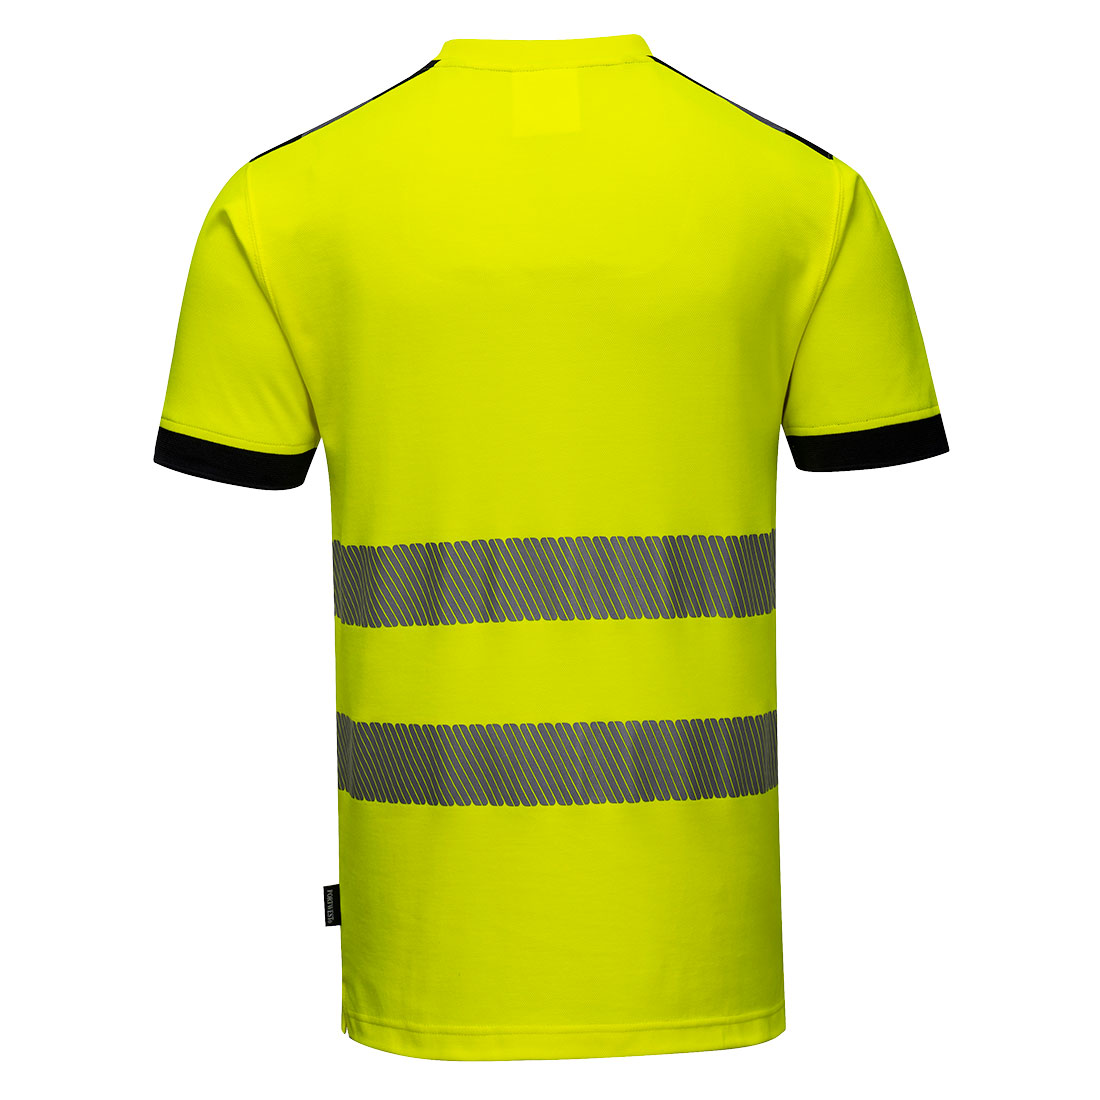 camiseta-amarillo-alta-visibilidad-con-cinta-reflectiva-espalda-T181-cental-de-suministrosgs.jpg